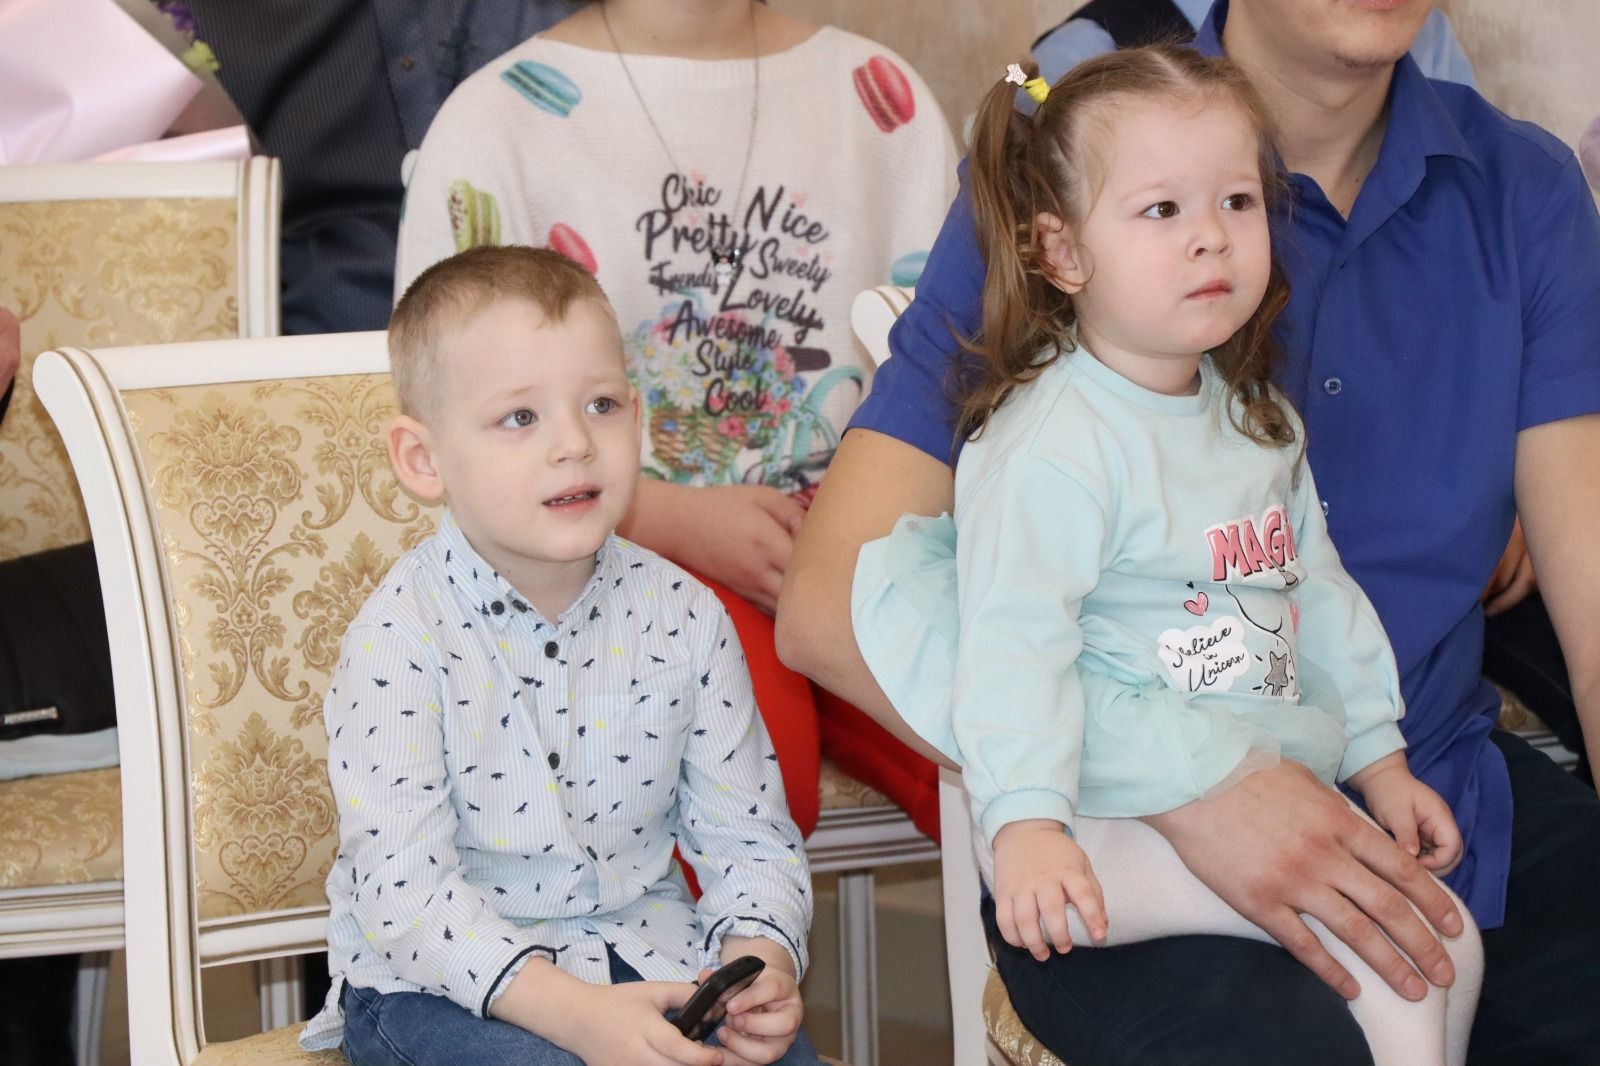 В Нурлате дали старт Году семьи в России